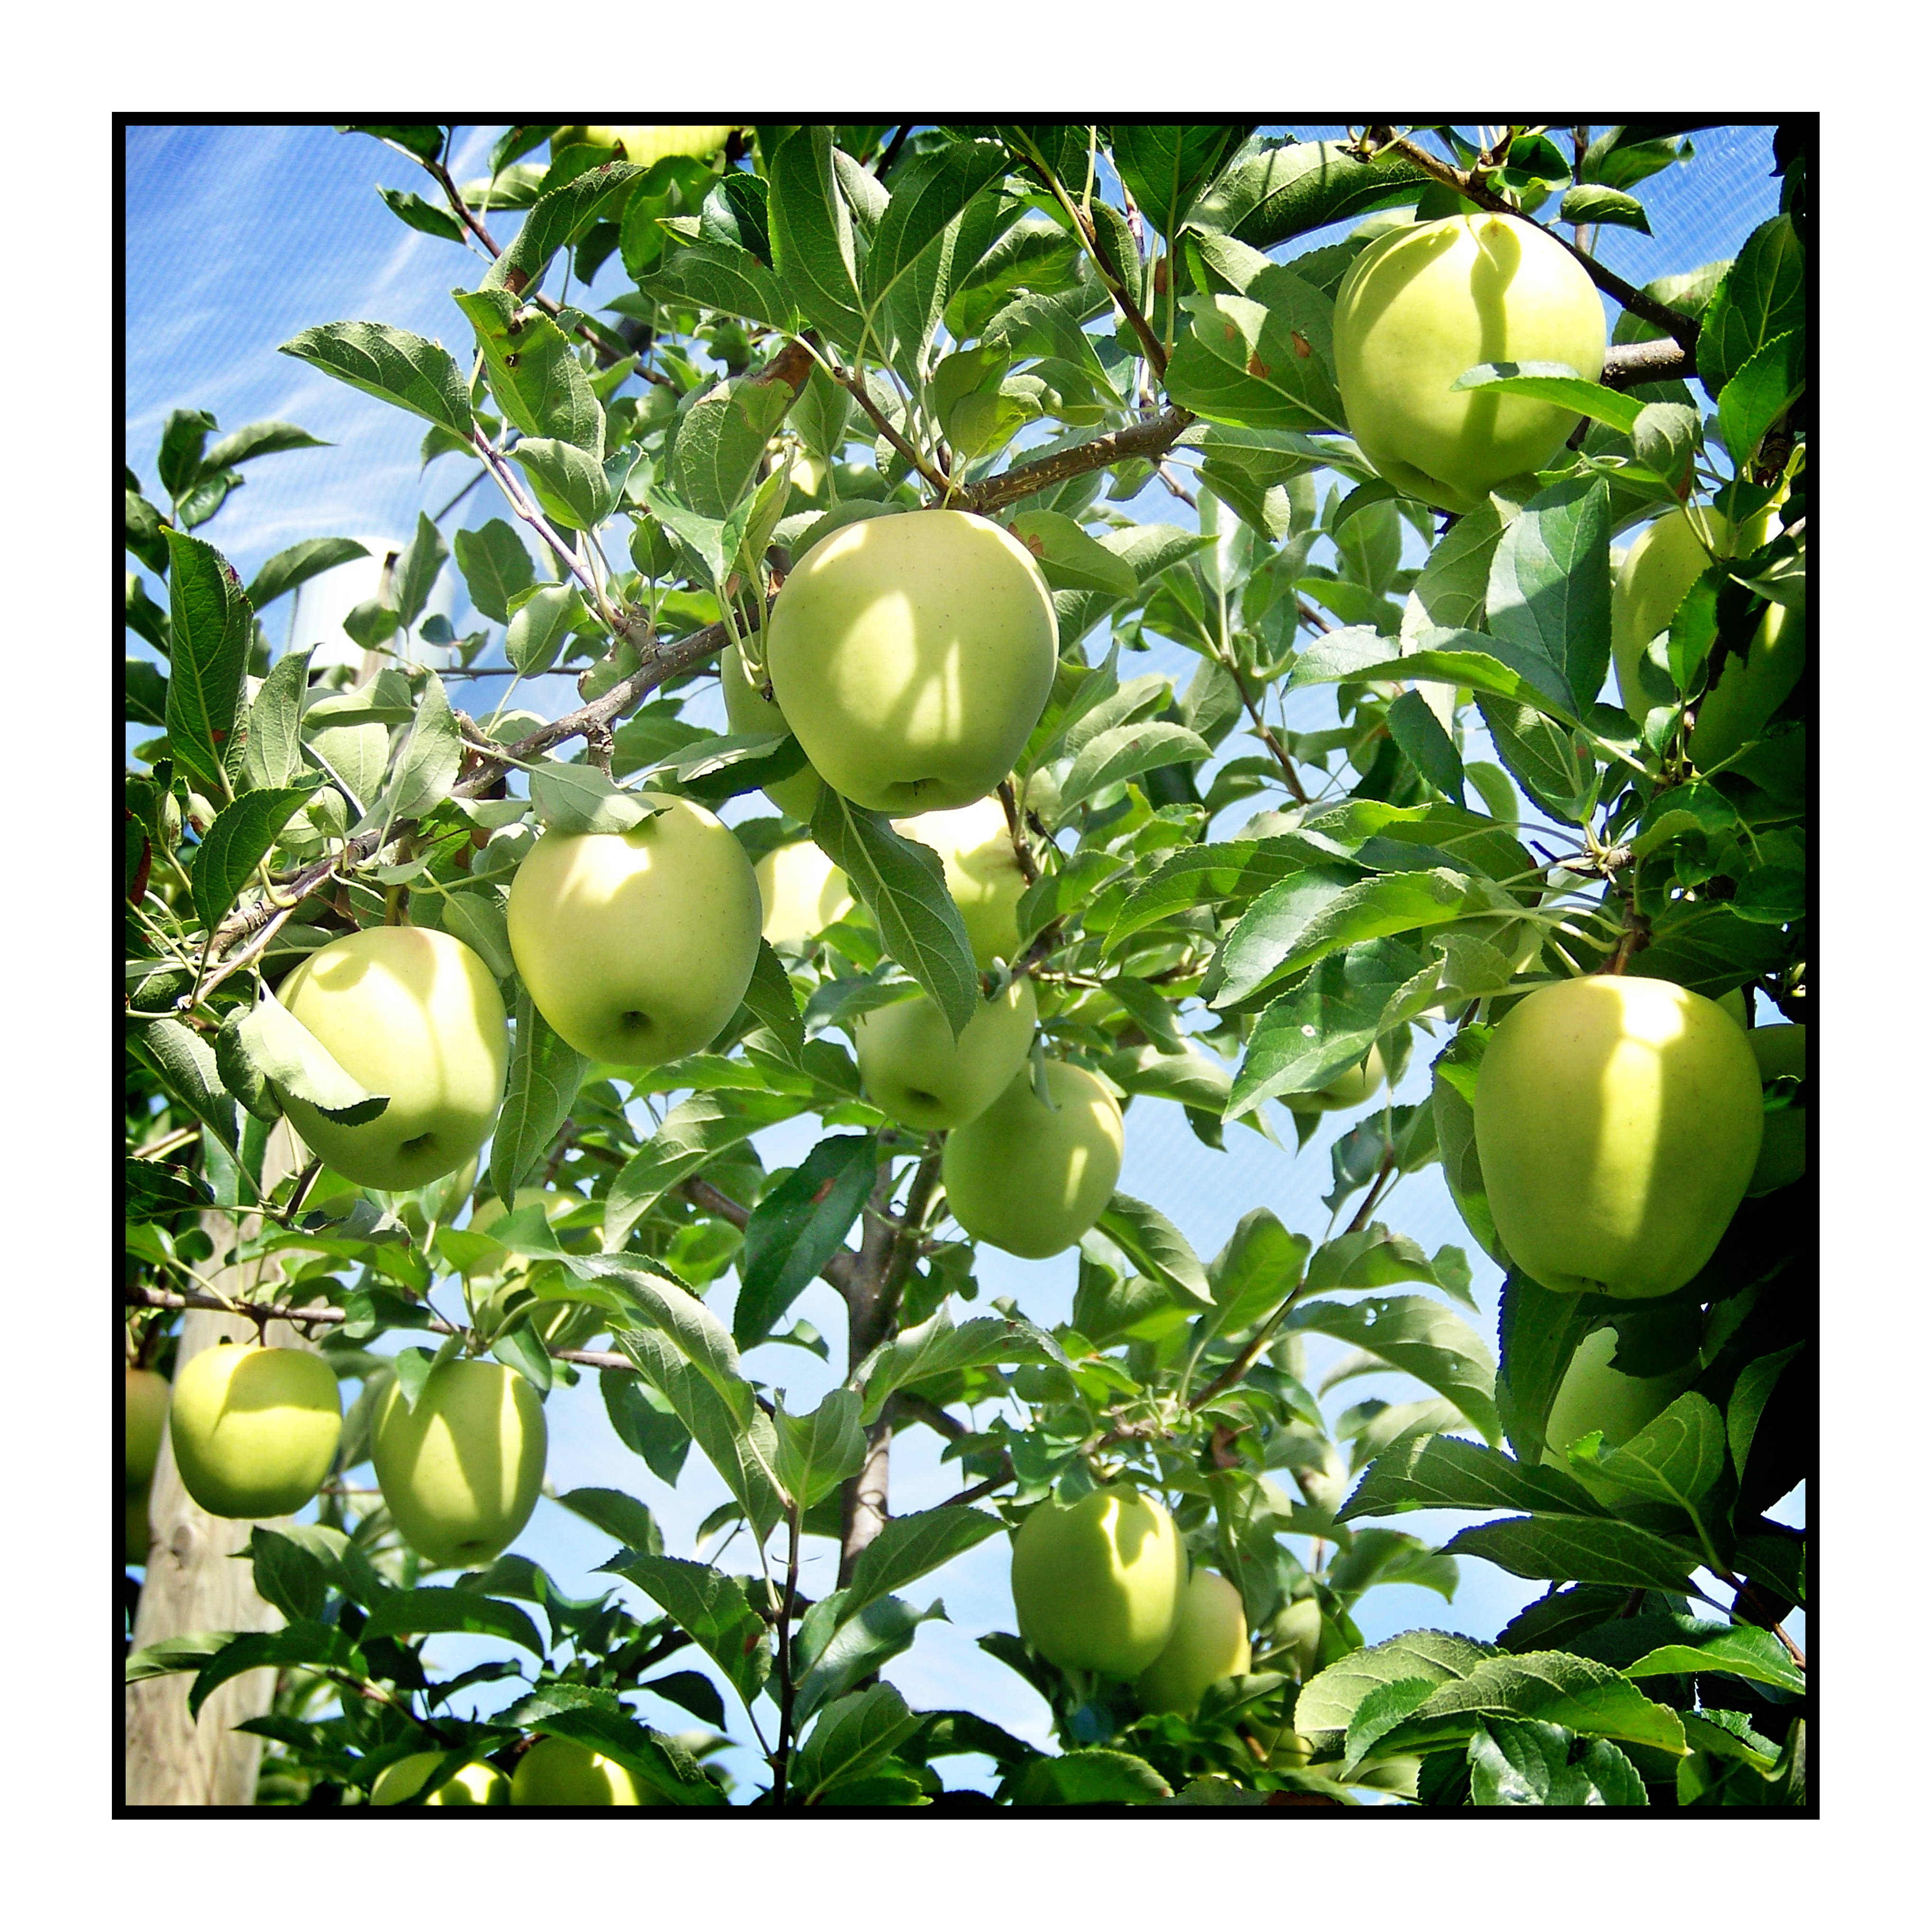 Pommes golden bio- locales- arboriculteur- ferme-magasin de producteurs - Gilly sur Isère / Albertville- savoie - terroir